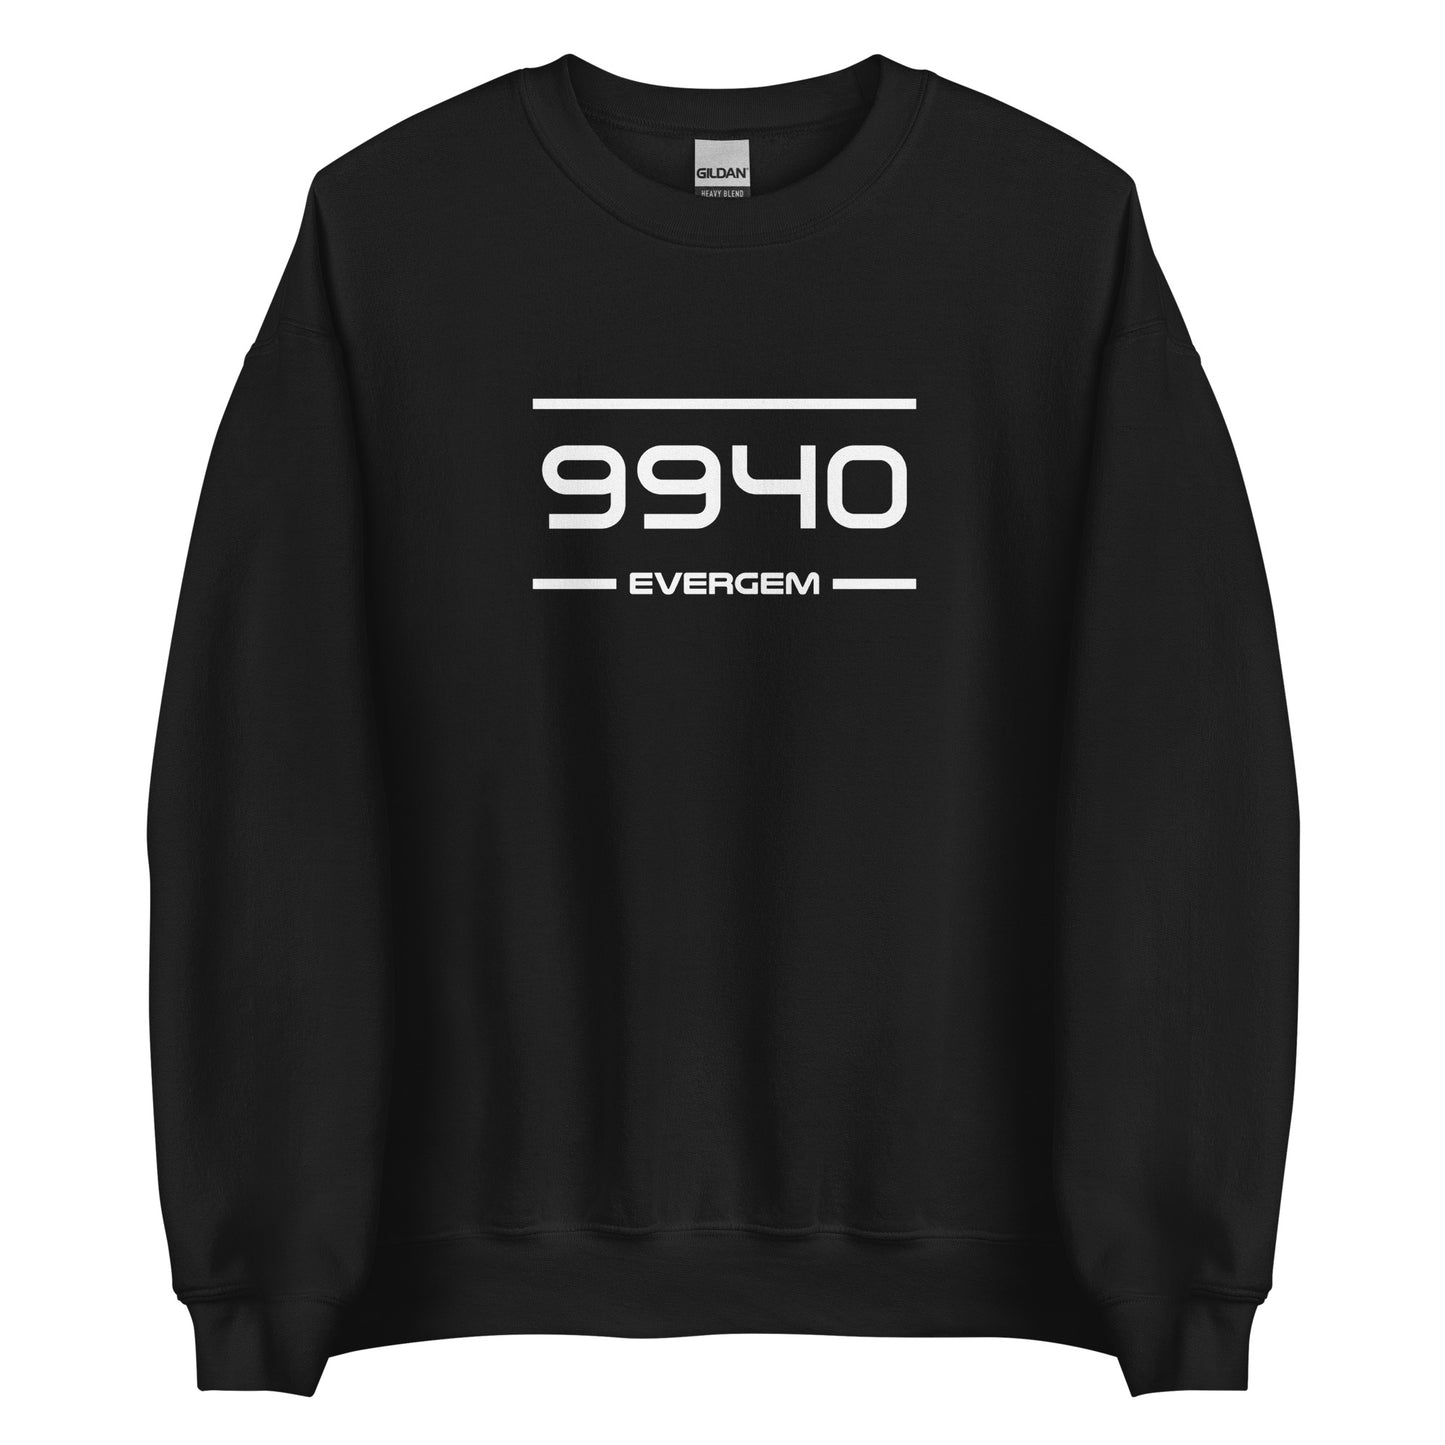 Sweater - 9940 - Evergem (M/V)